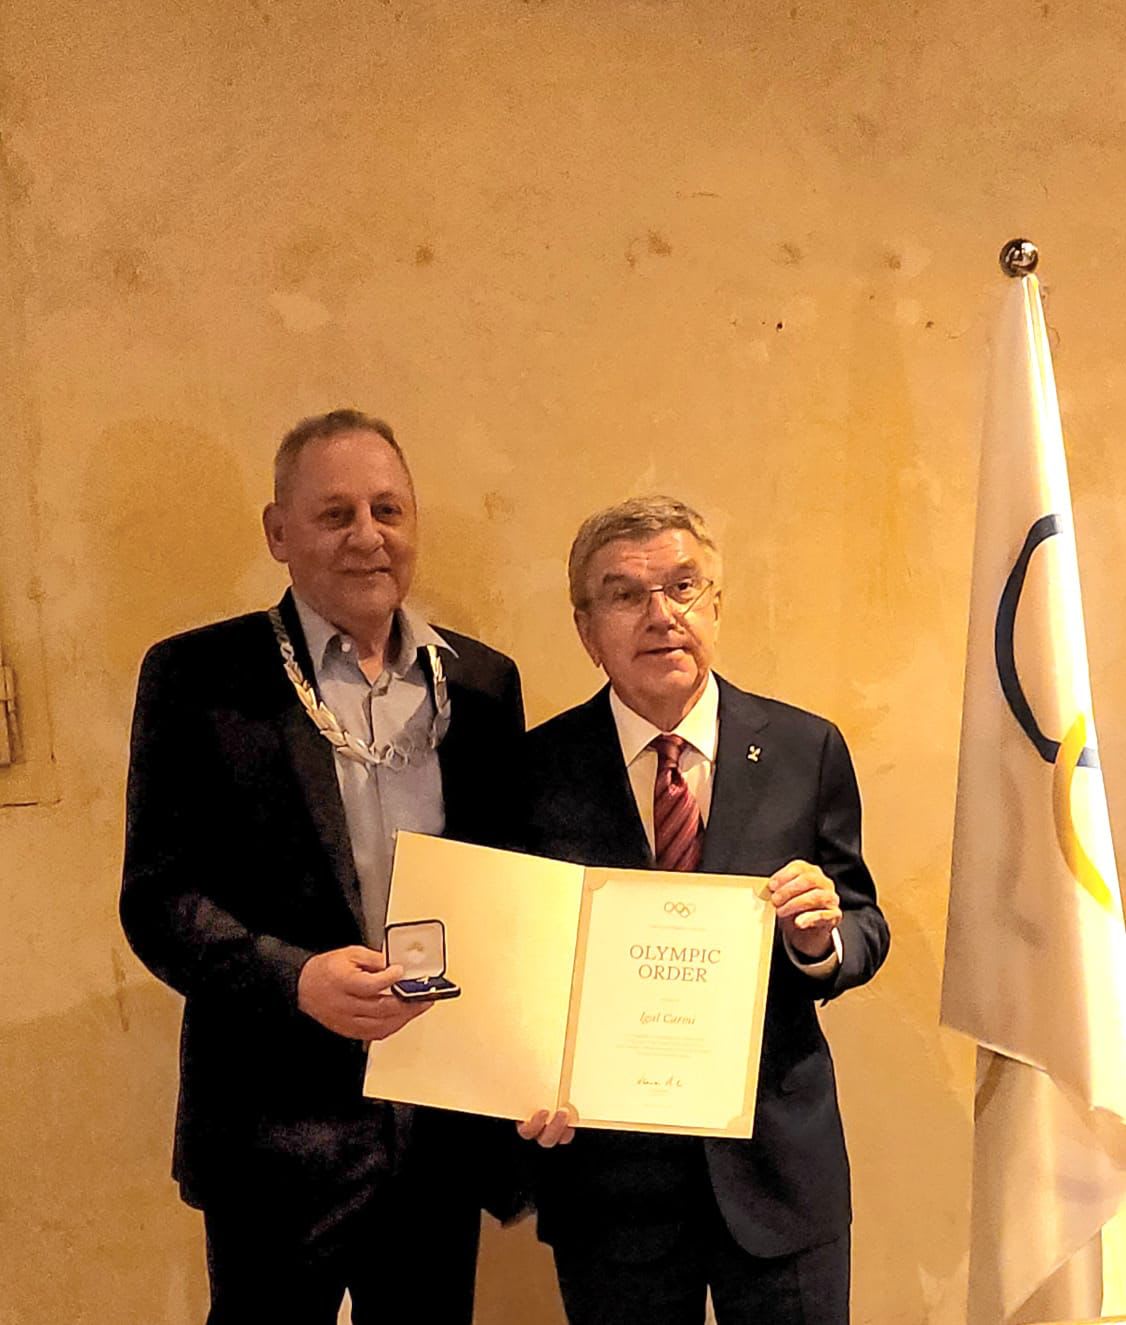 נשיא הוועד האולימפי הבינלאומי תומאס באך מעניק את עיטור הכבוד ליו"ר הוועד האולימפי הקודם יגאל כרמי